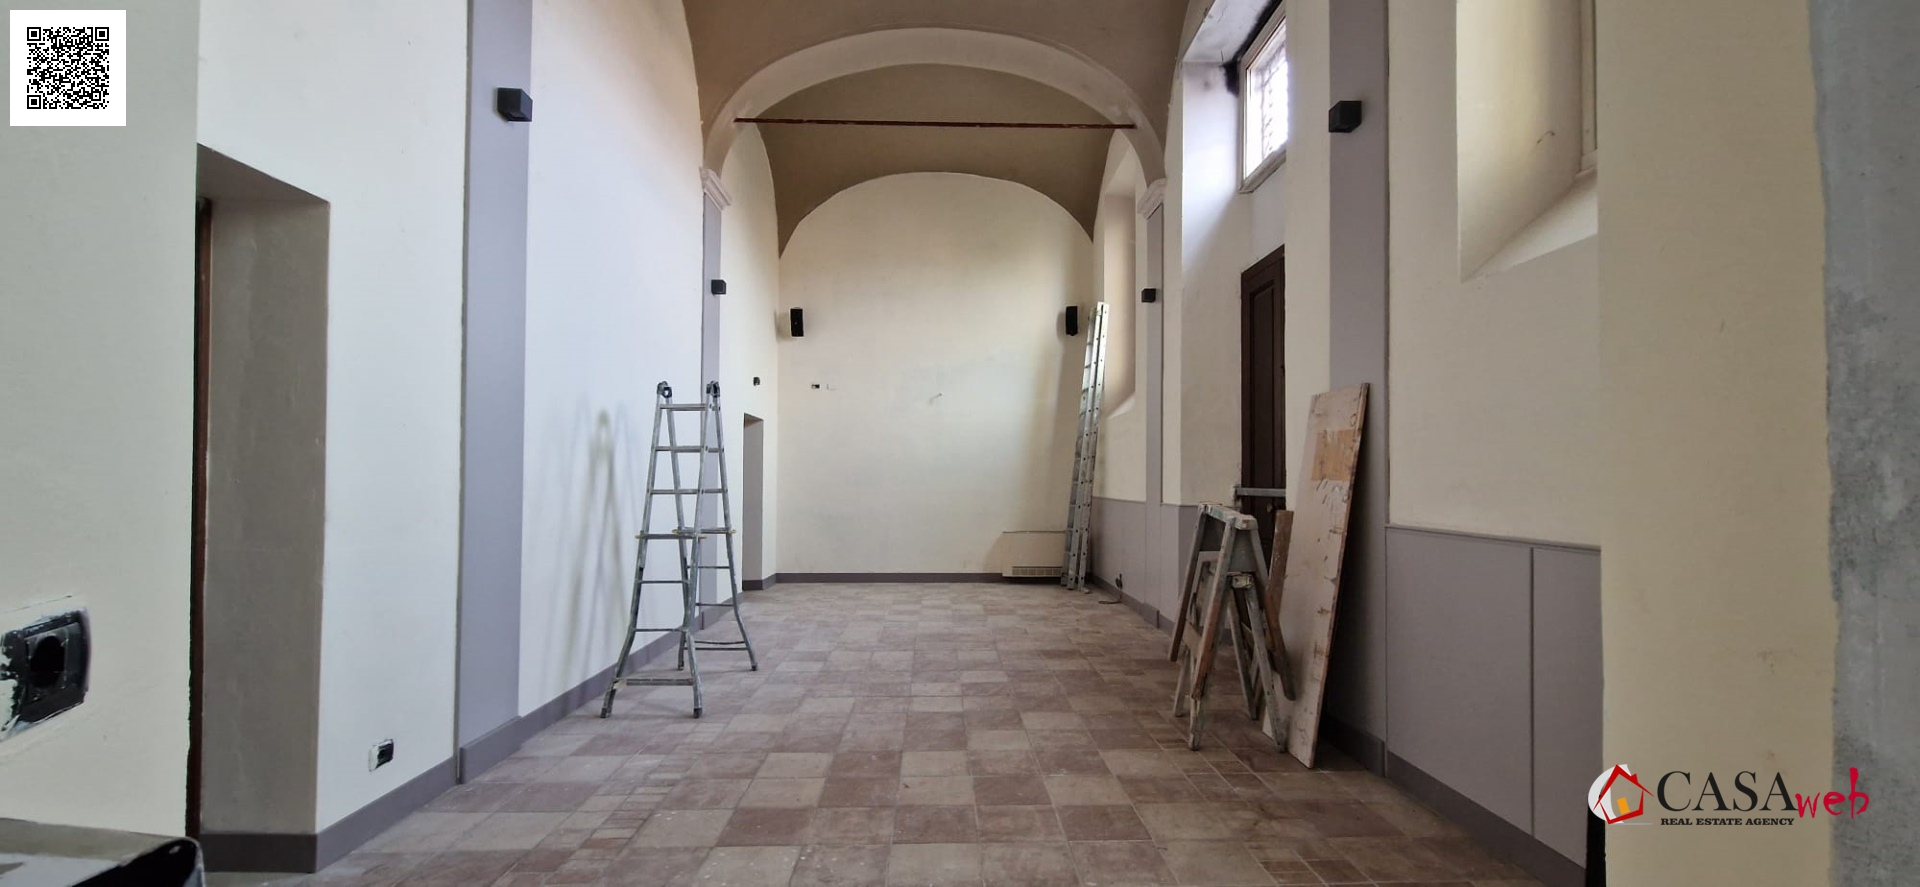 Ufficio / Studio in affitto a Inzago, 3 locali, prezzo € 1.800 | PortaleAgenzieImmobiliari.it